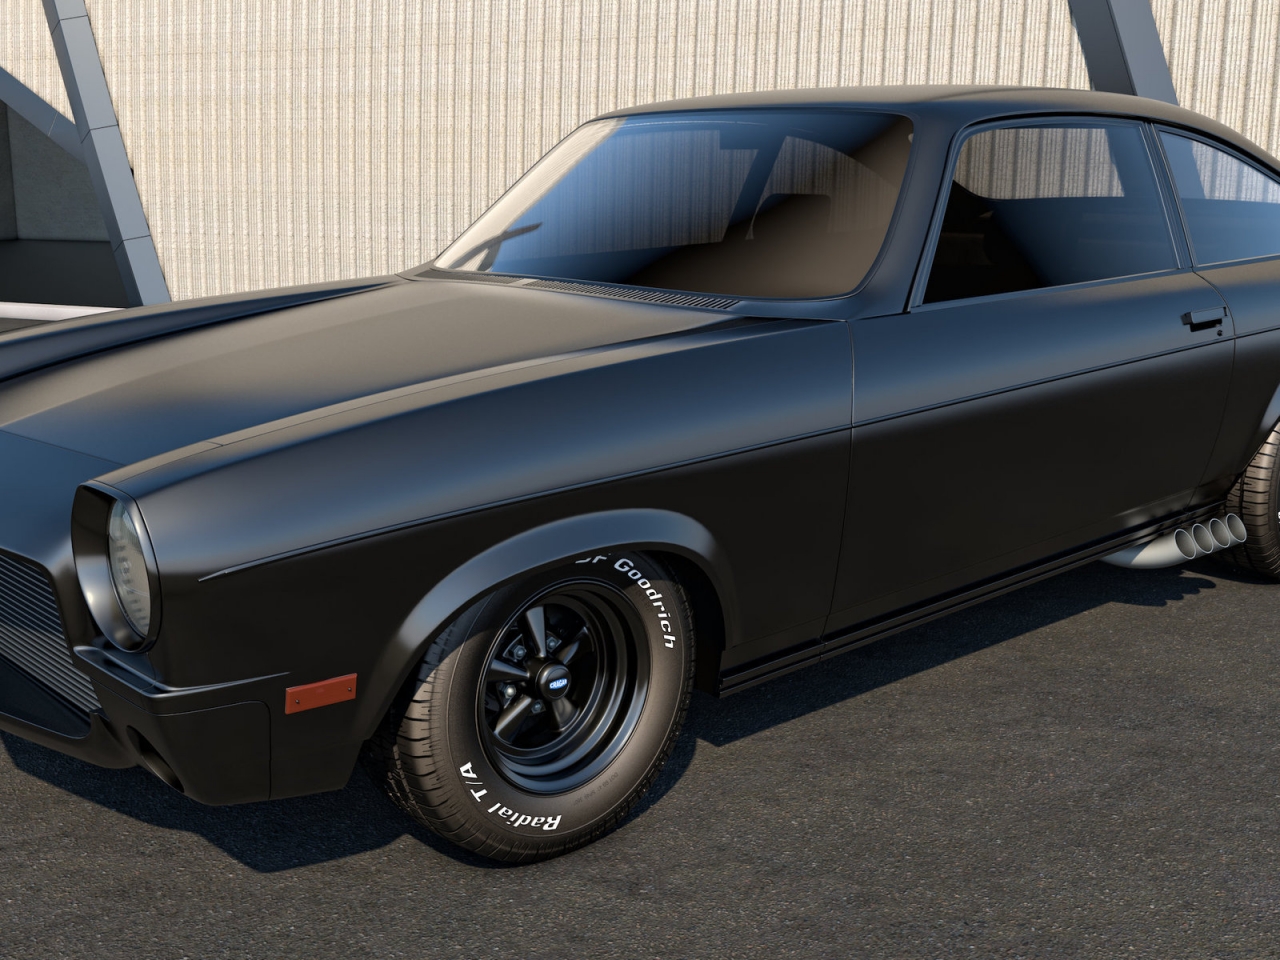 Black Chevrolet Vega for 1280 x 960 resolution